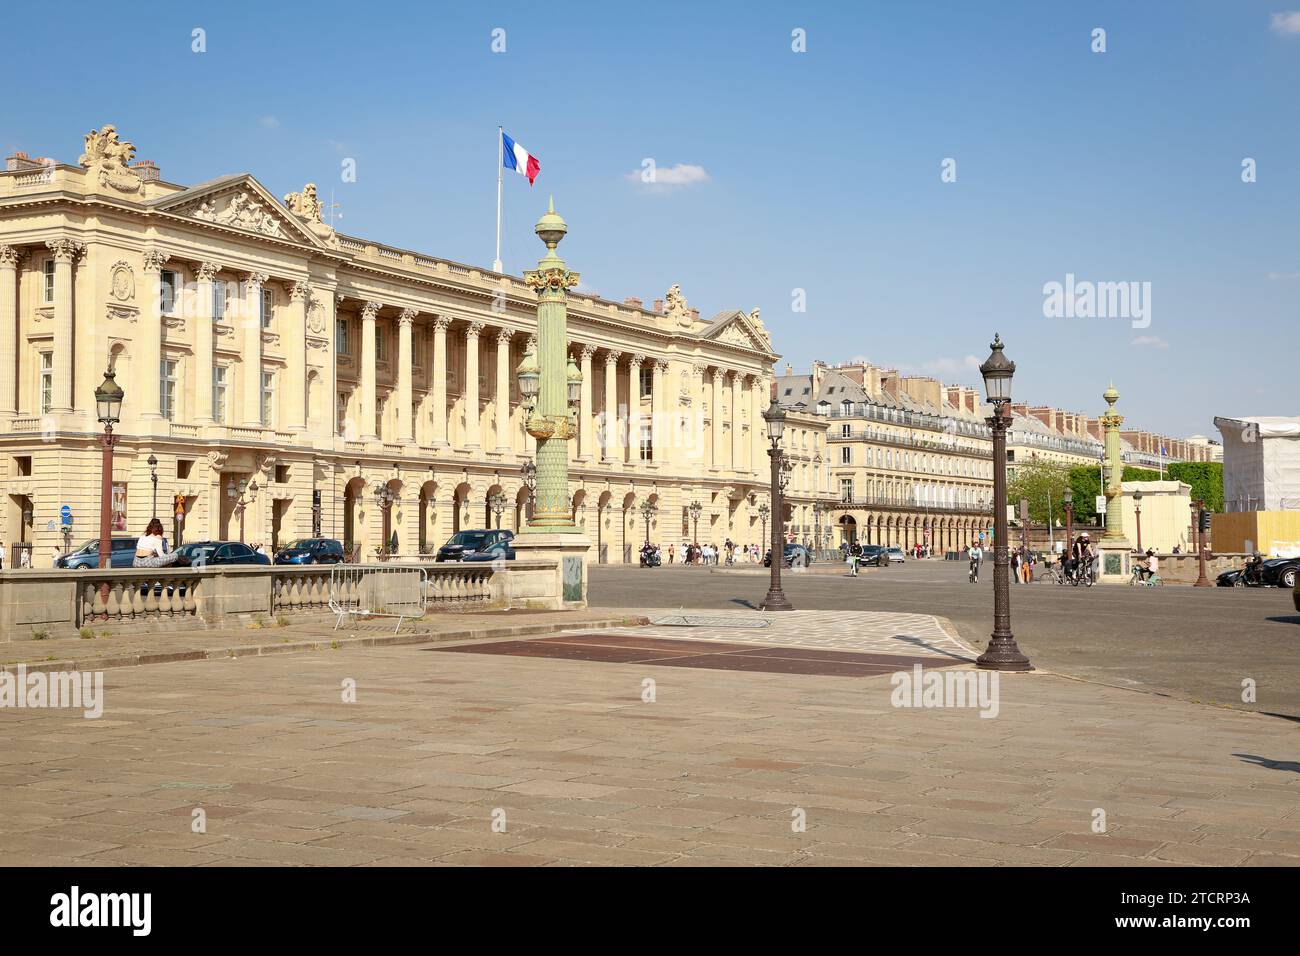 Place de la Concorde, l'une des places les plus célèbres de Paris, France Banque D'Images